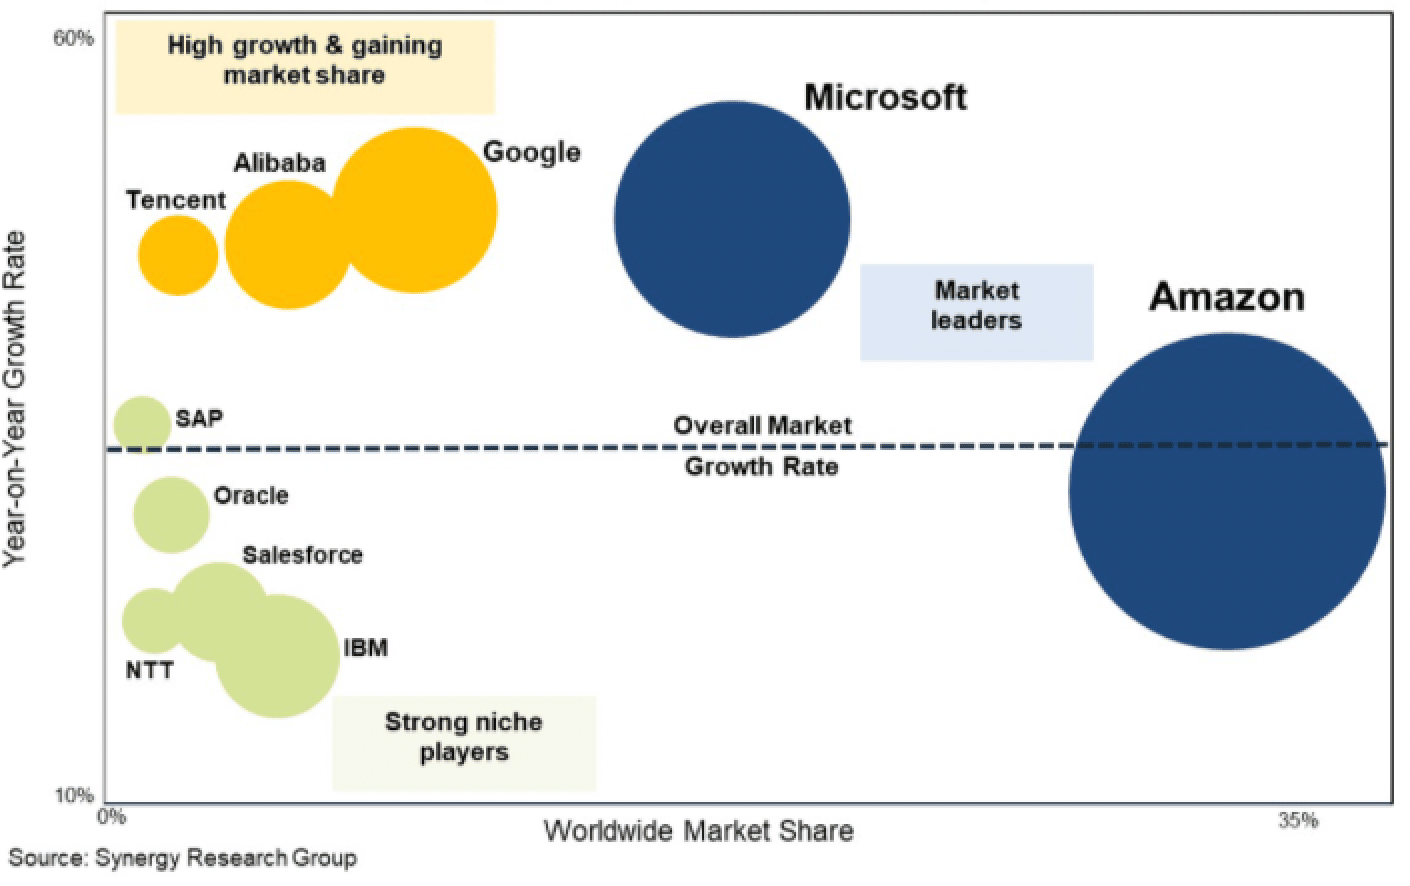 Graphique du positionnement des fournisseurs des services cloud (Tencent, Alibaba, Google, Microsoft, Amazon IBM).